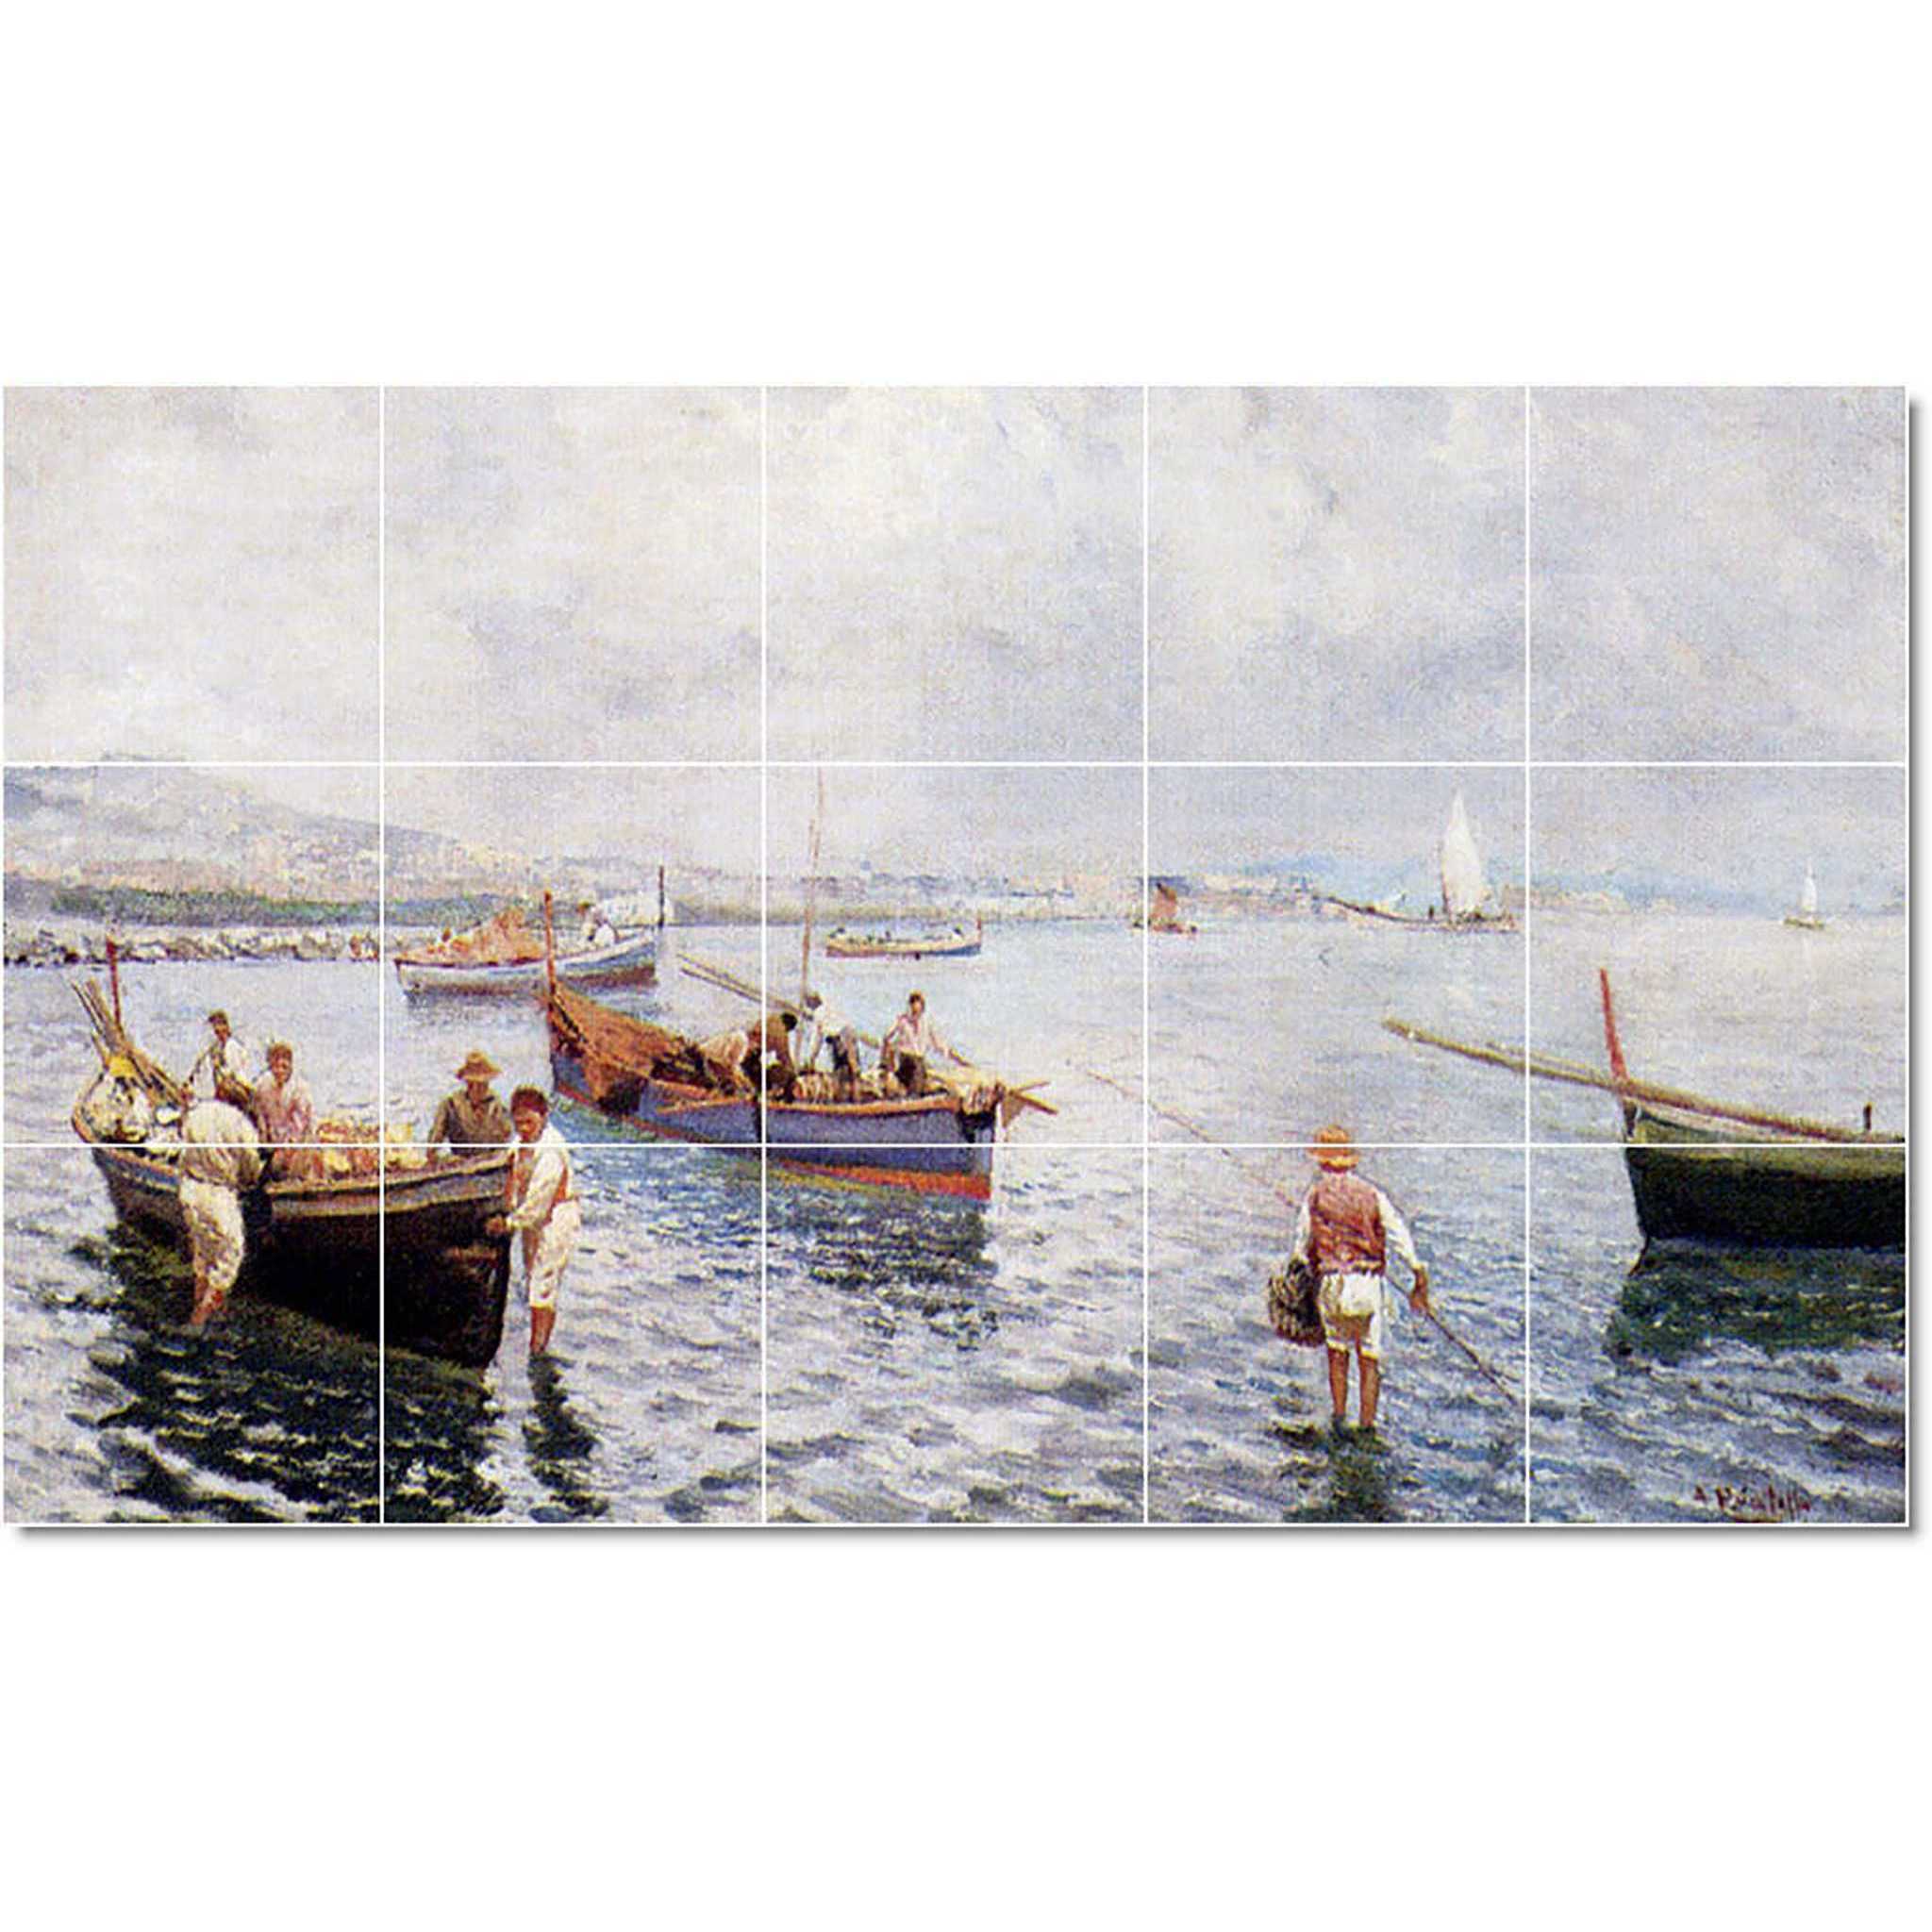 attilio pratella boat ship painting ceramic tile mural p22926